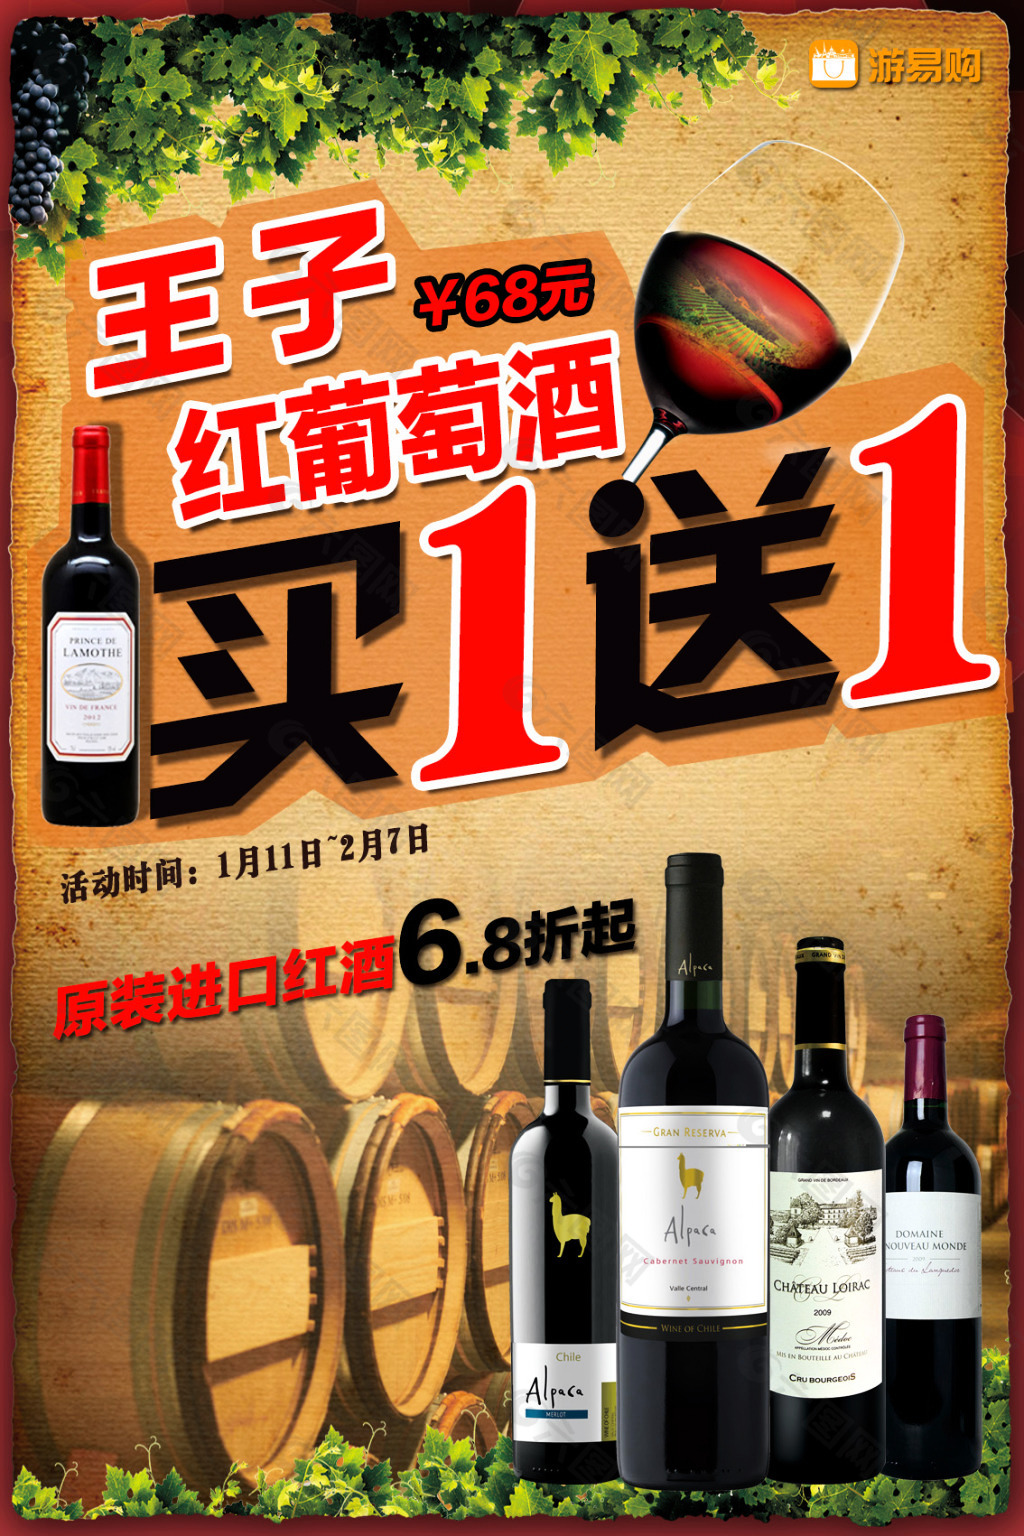 红酒促销海报平面广告素材免费下载(图片编号:6033078